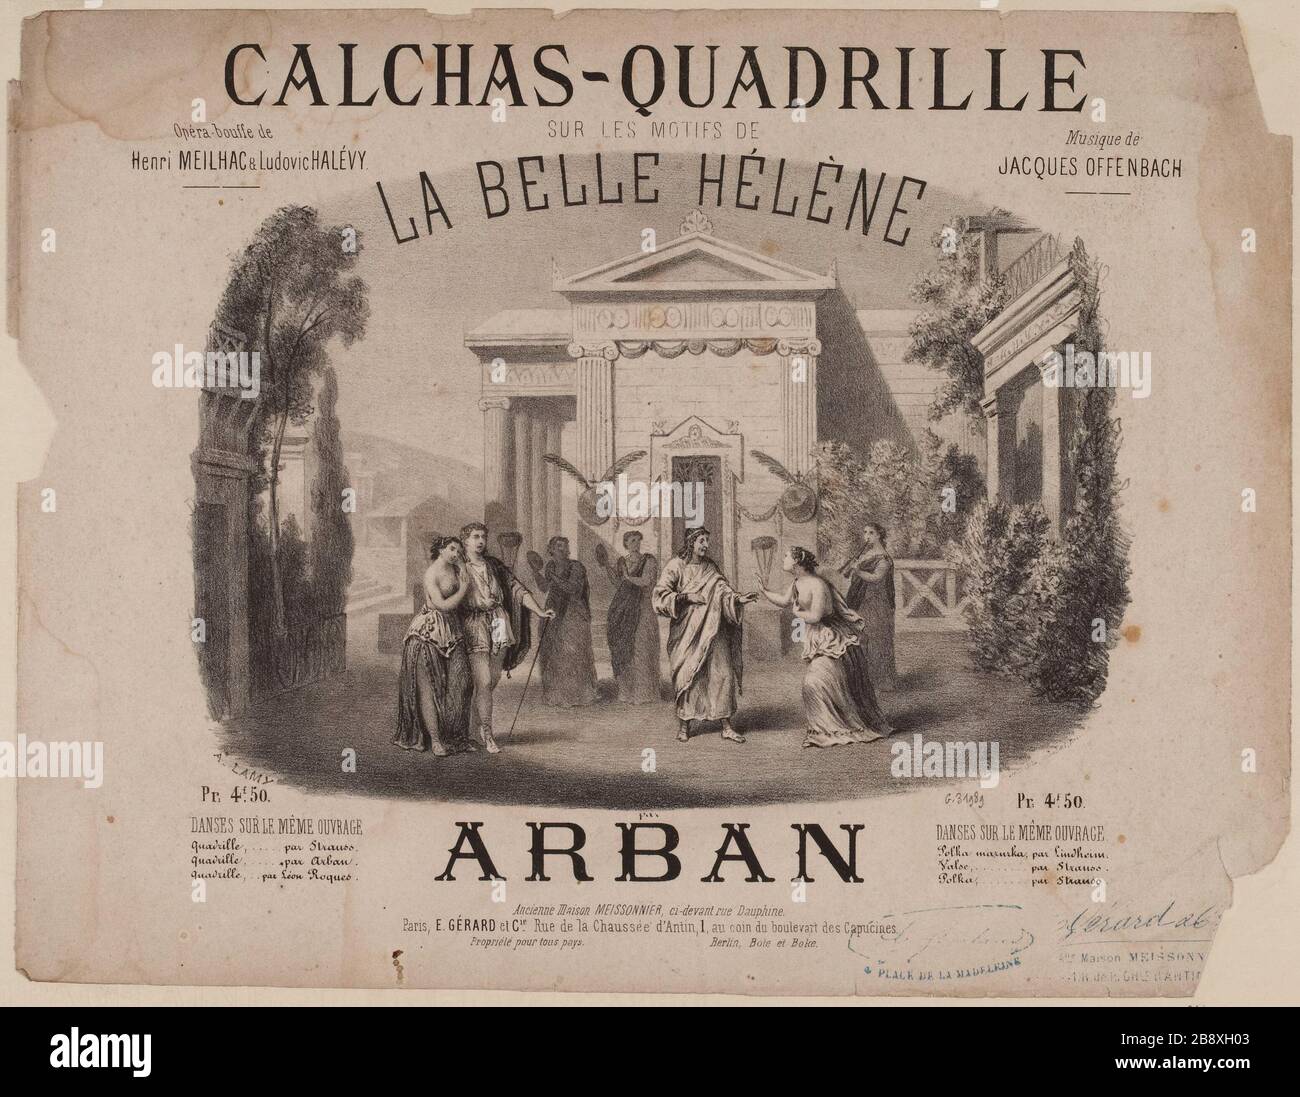 Calchas-Quadrille / on the grounds / La belle Hélène Stock Photo